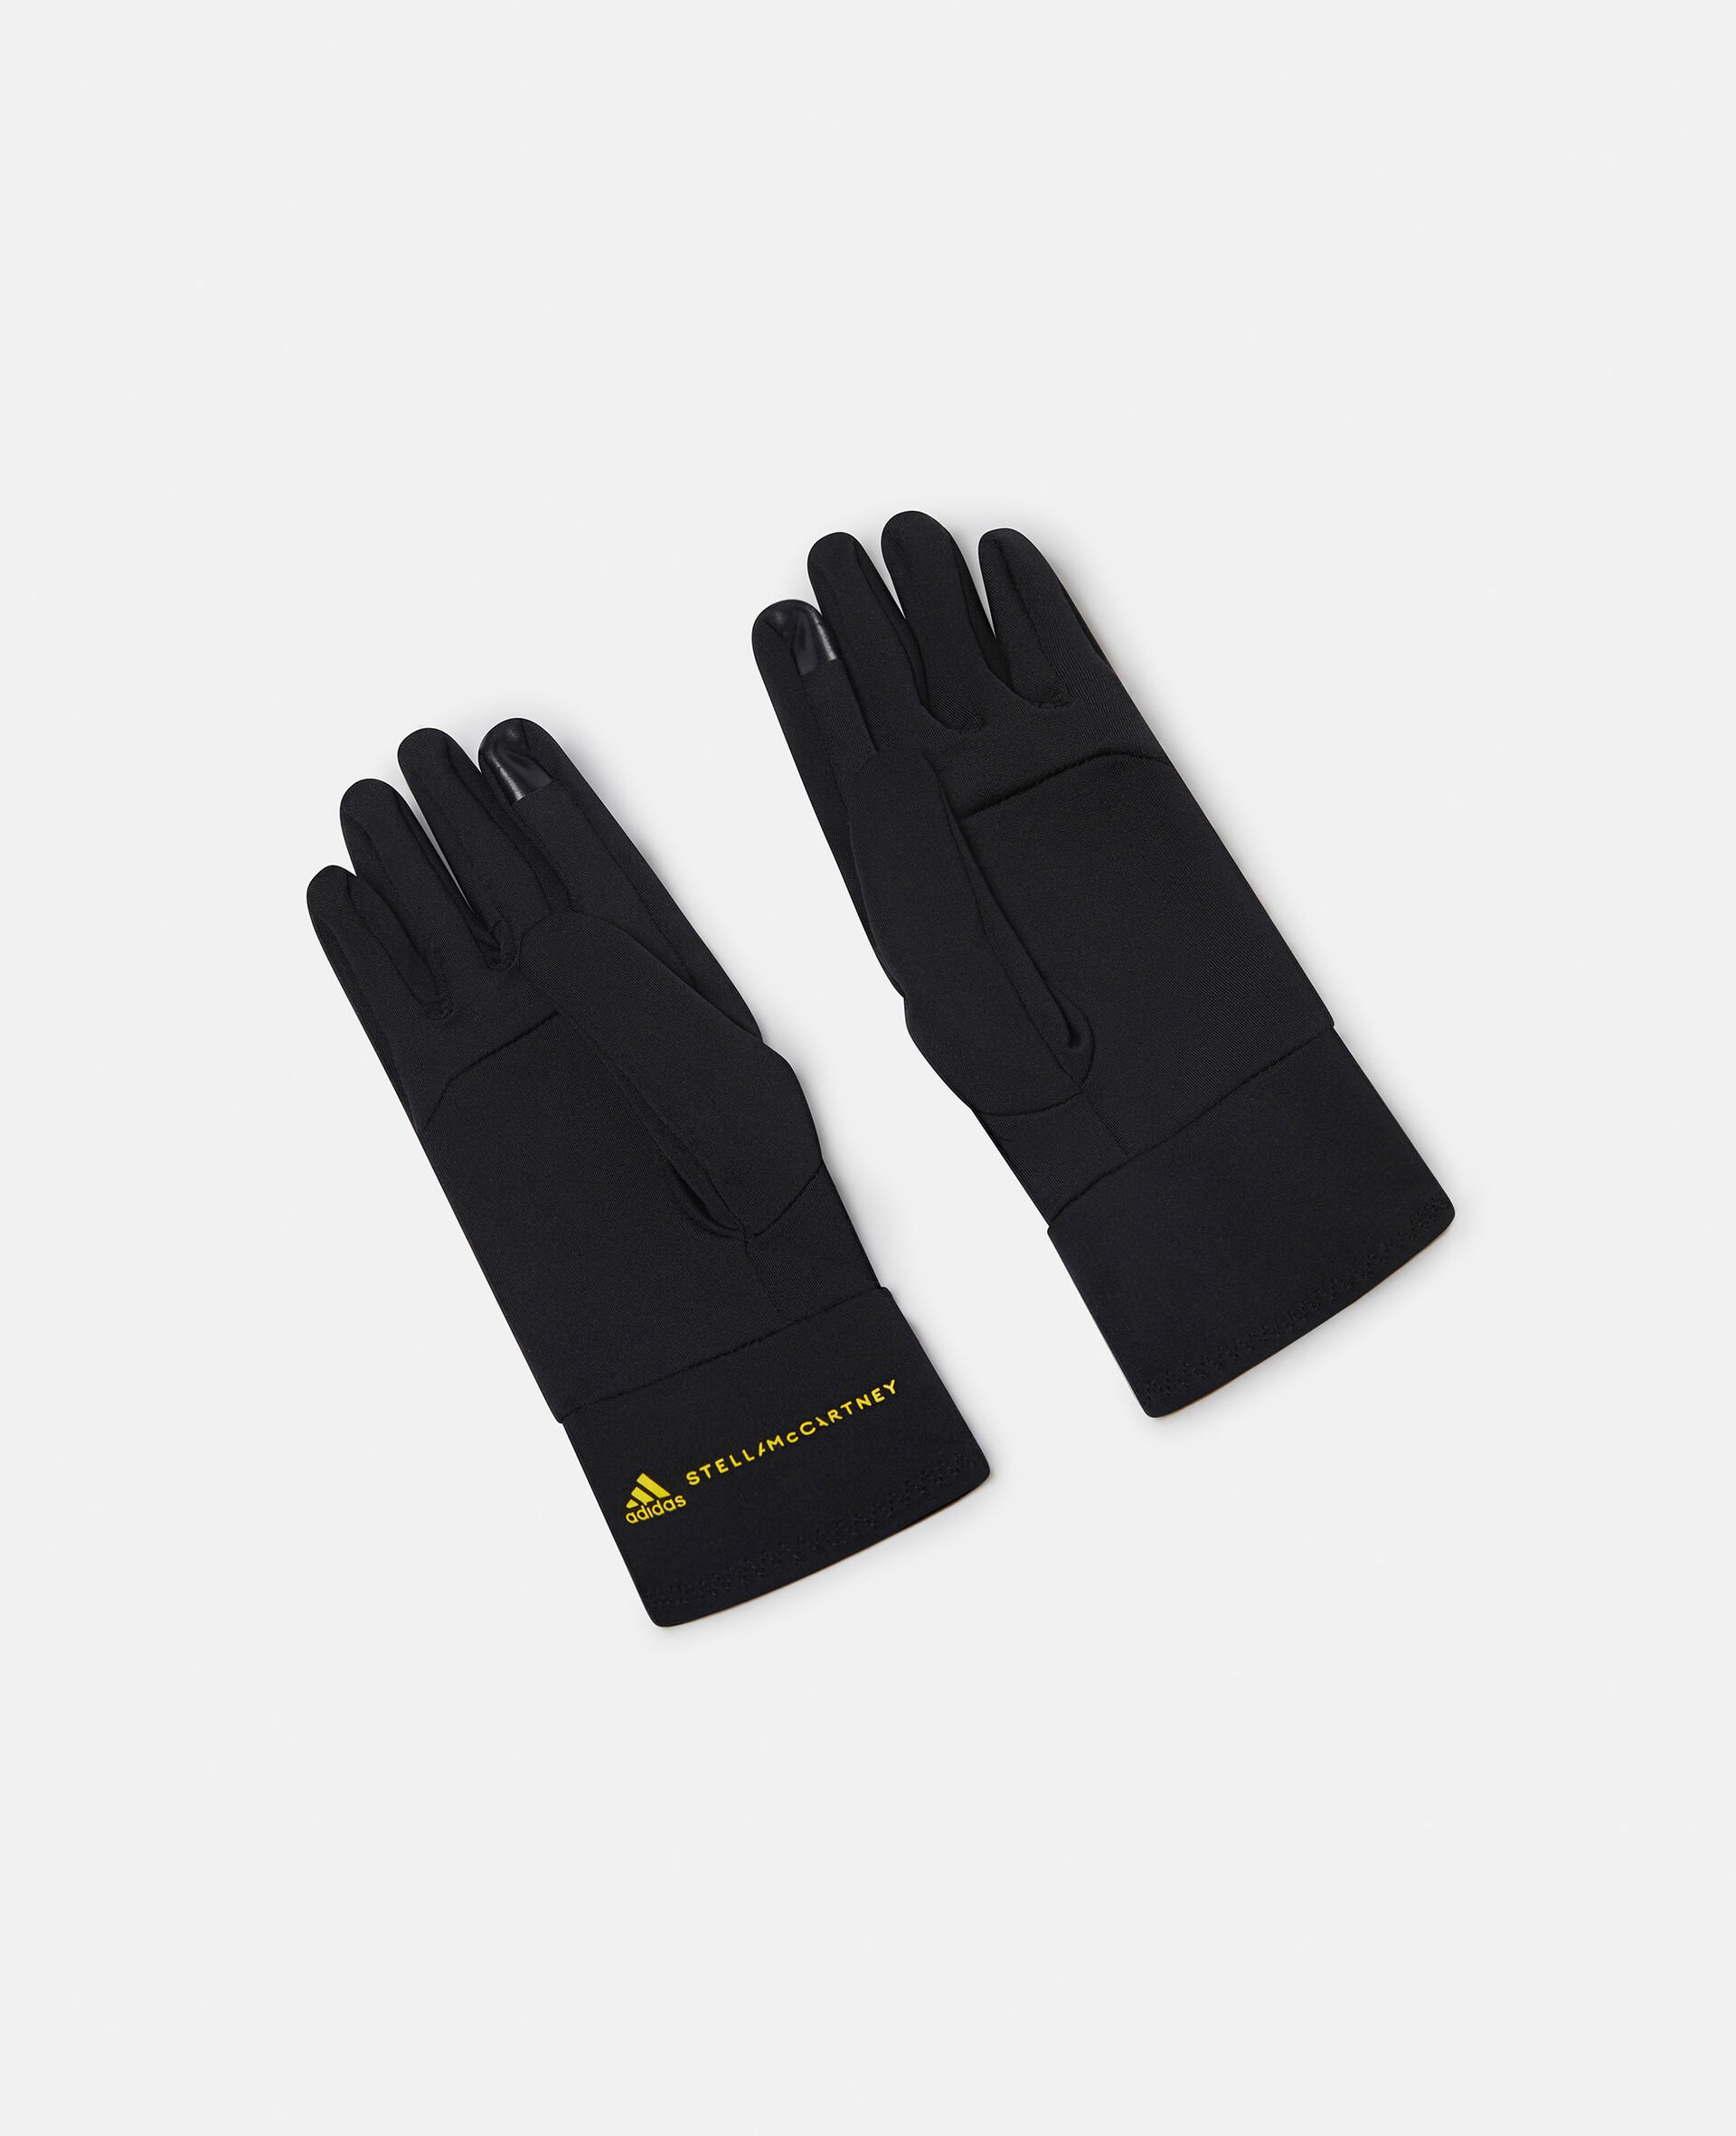 Training Gloves-Black-large image number 2